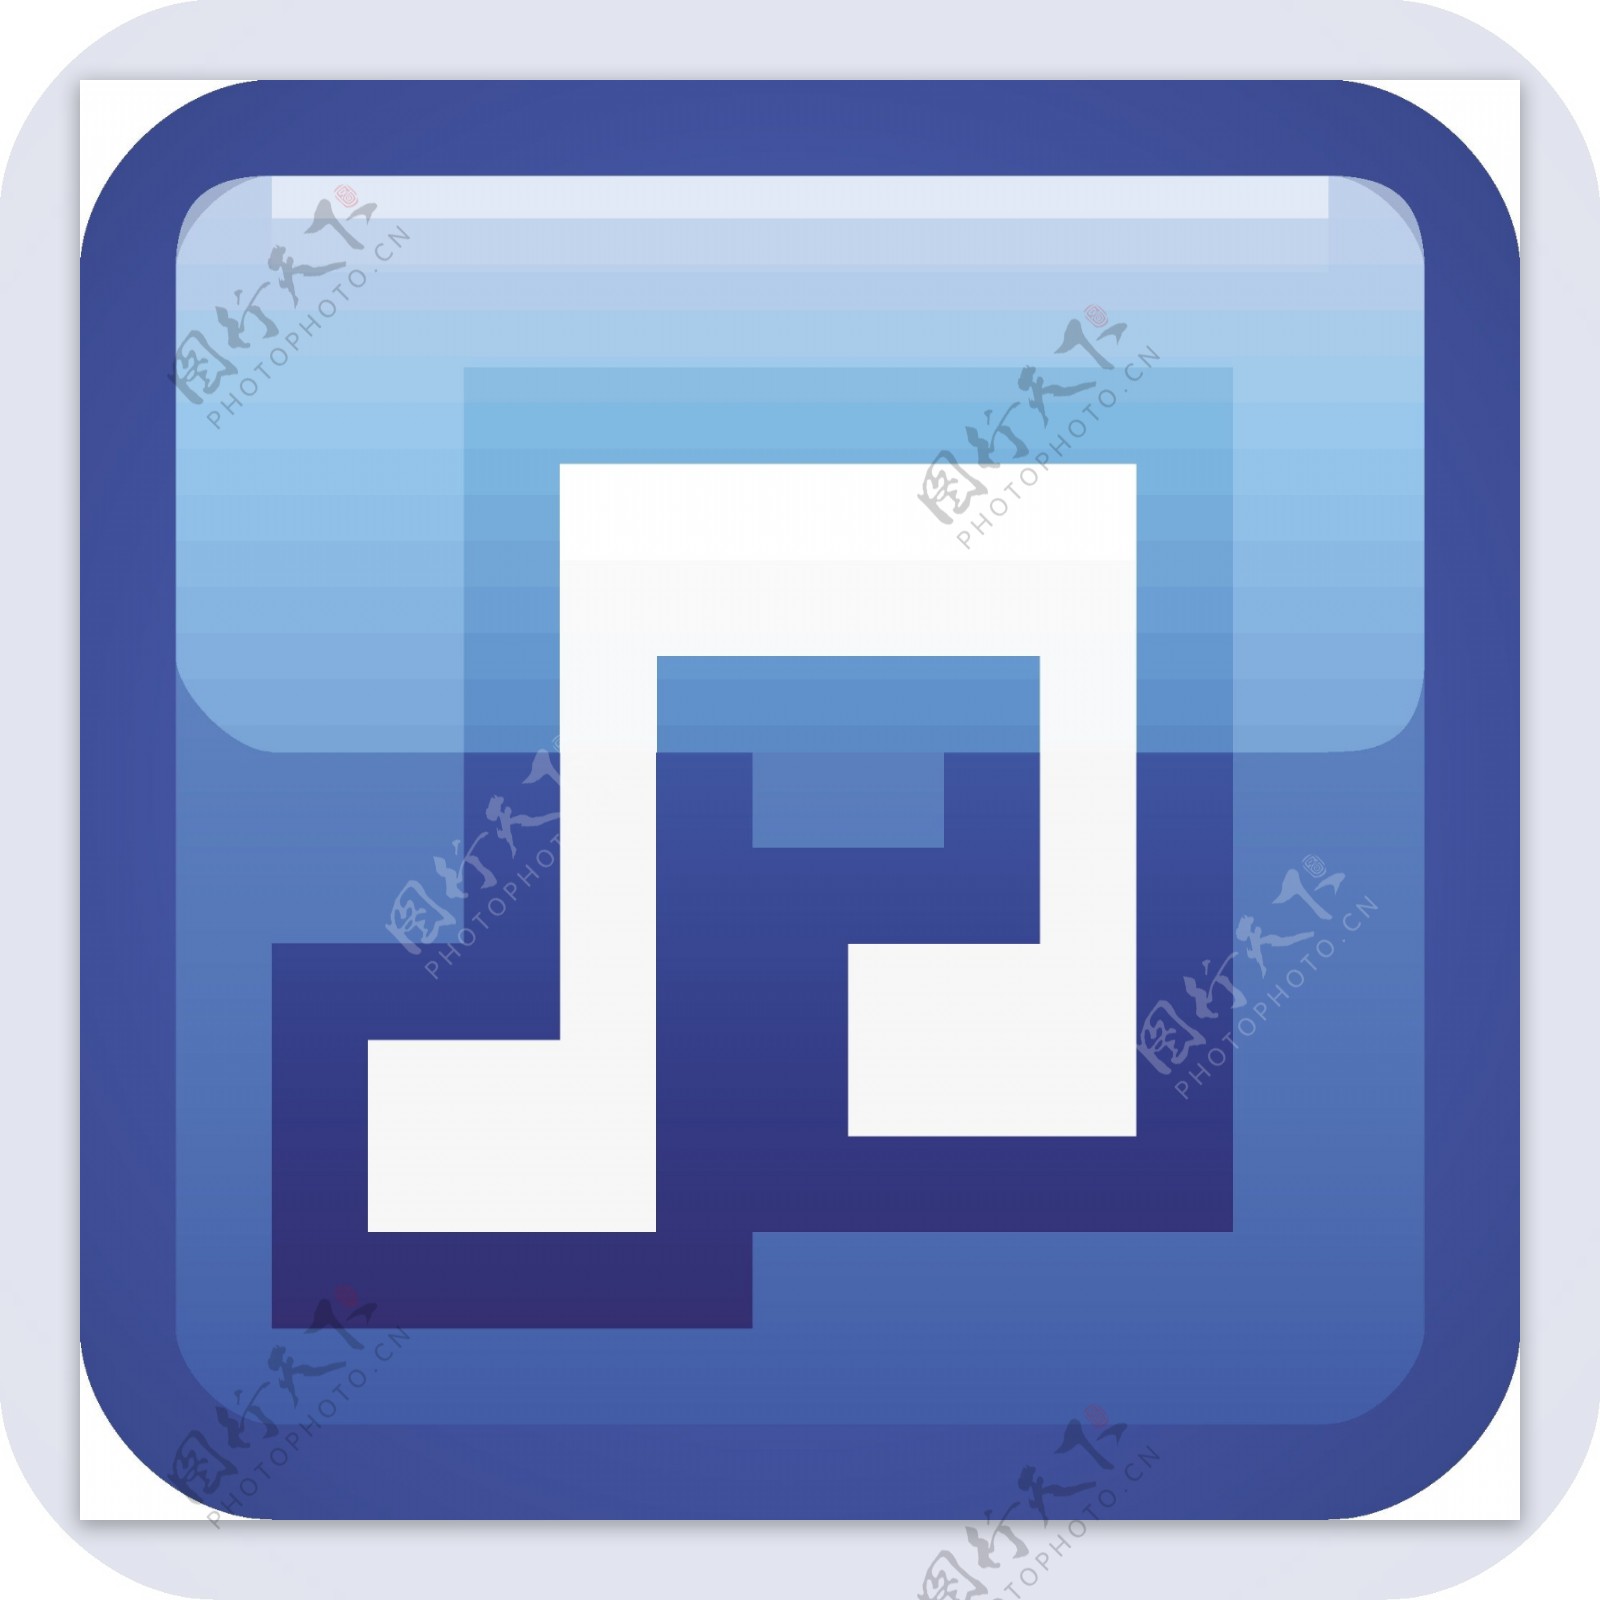 音乐的蓝色小应用程序图标